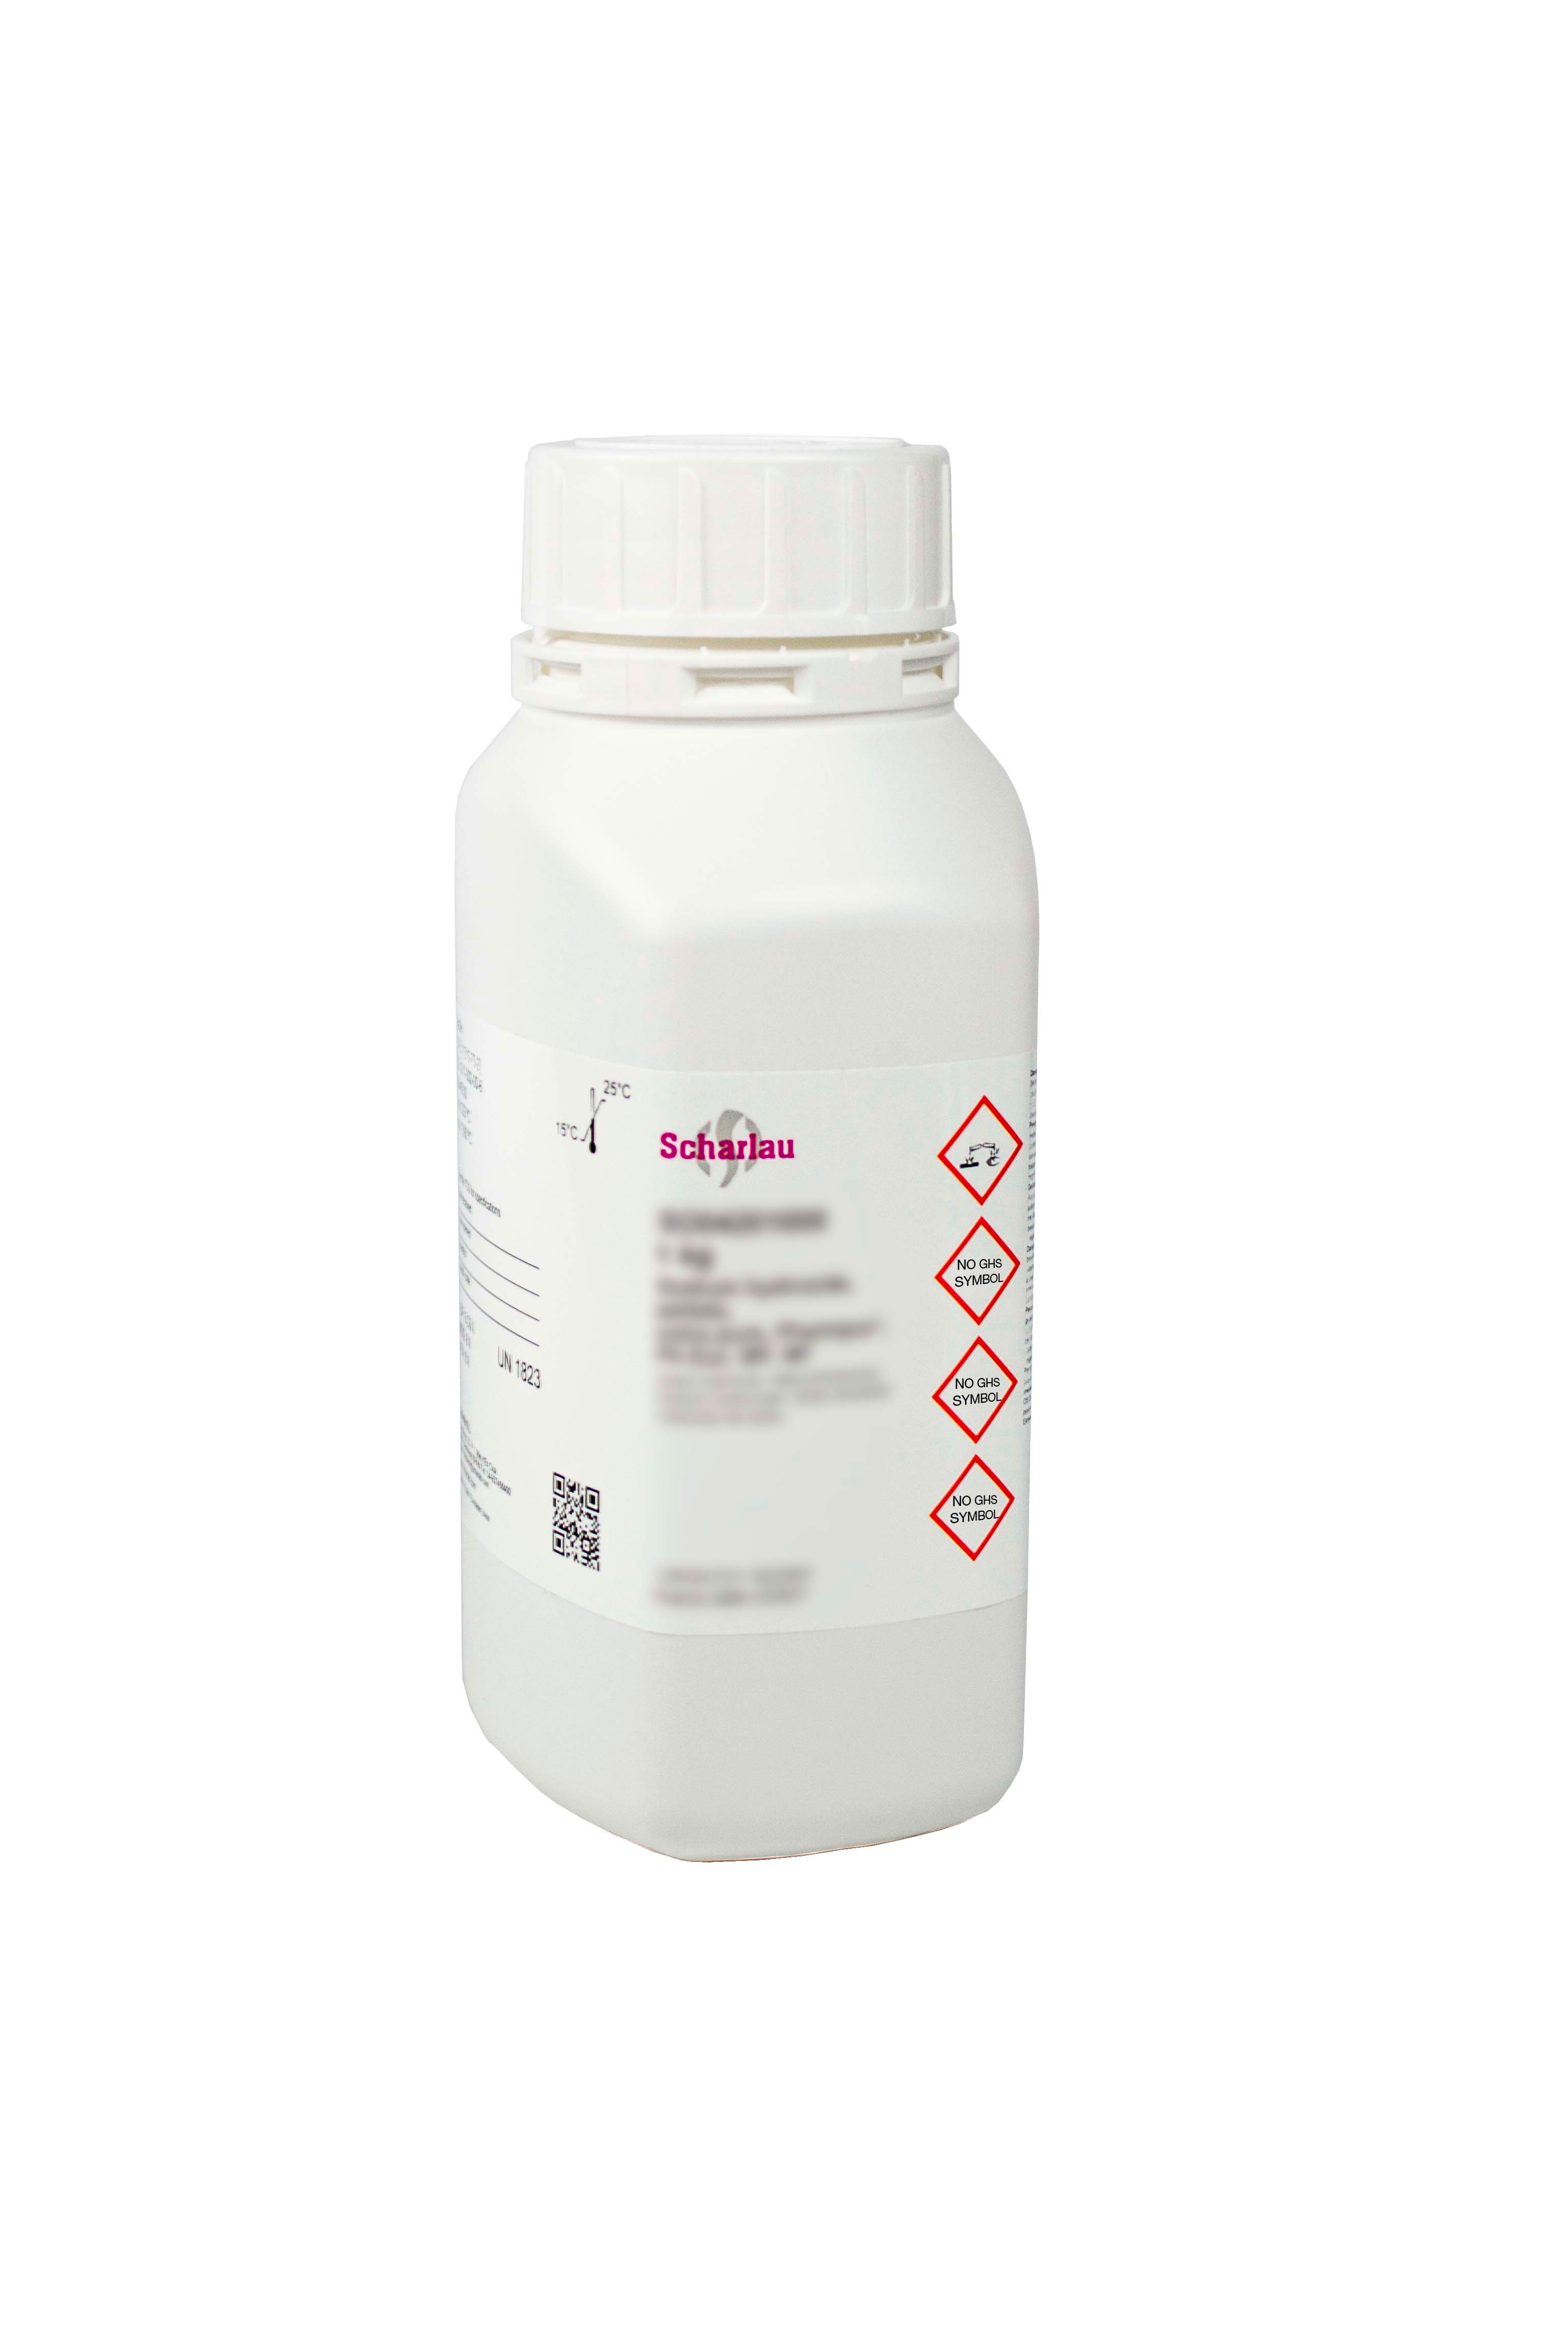 di-Potasio oxalato monohidrato, para análisis, ExpertQ®, ACS